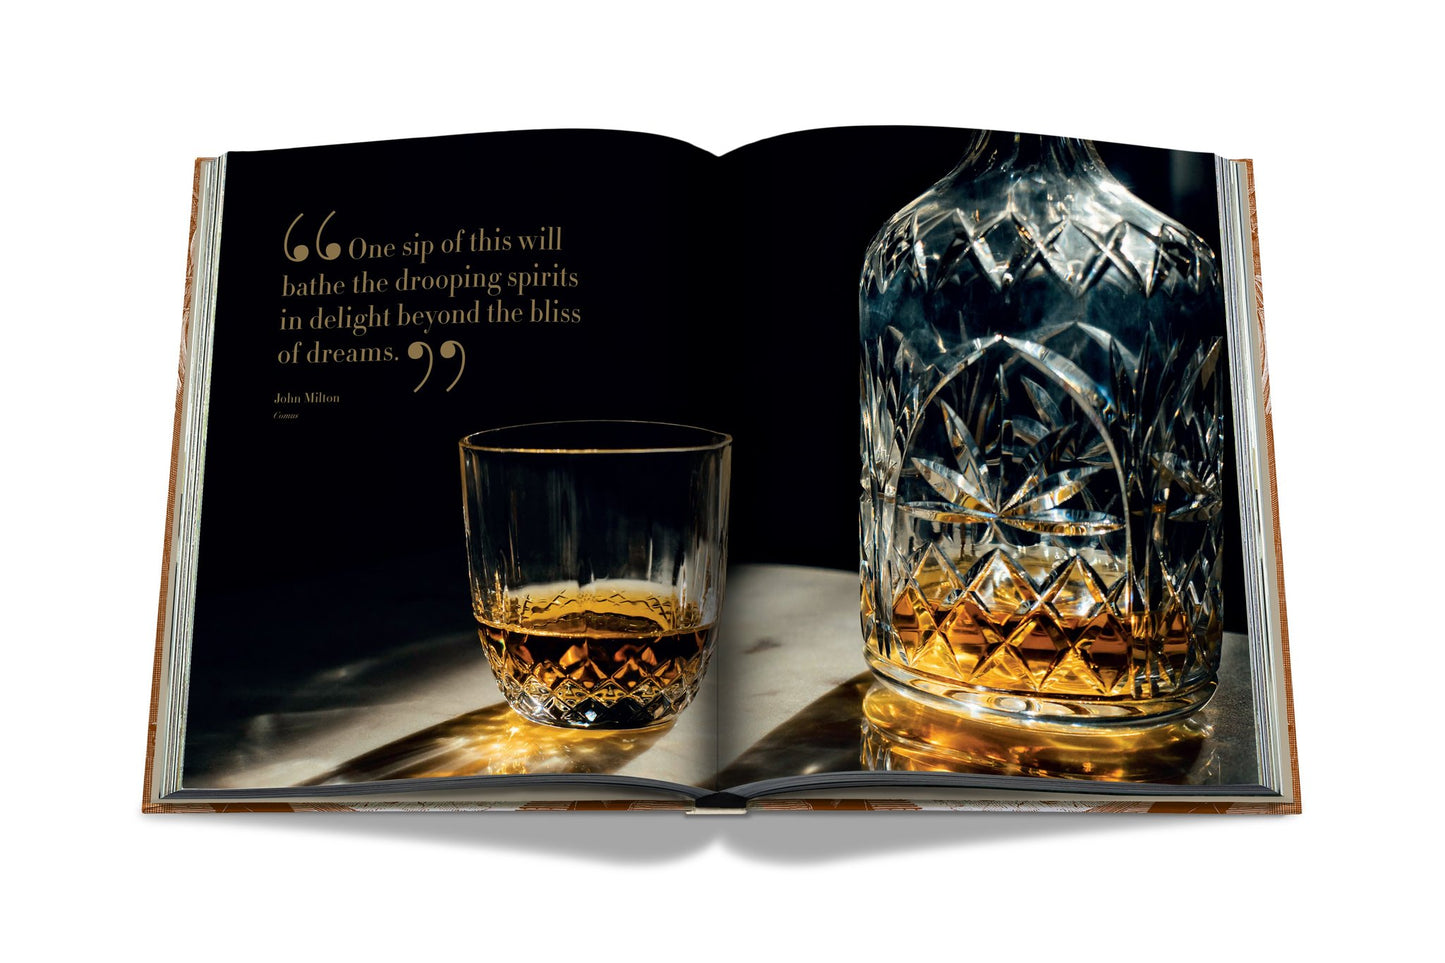 Buch Whisky: Unmögliche Sammlung